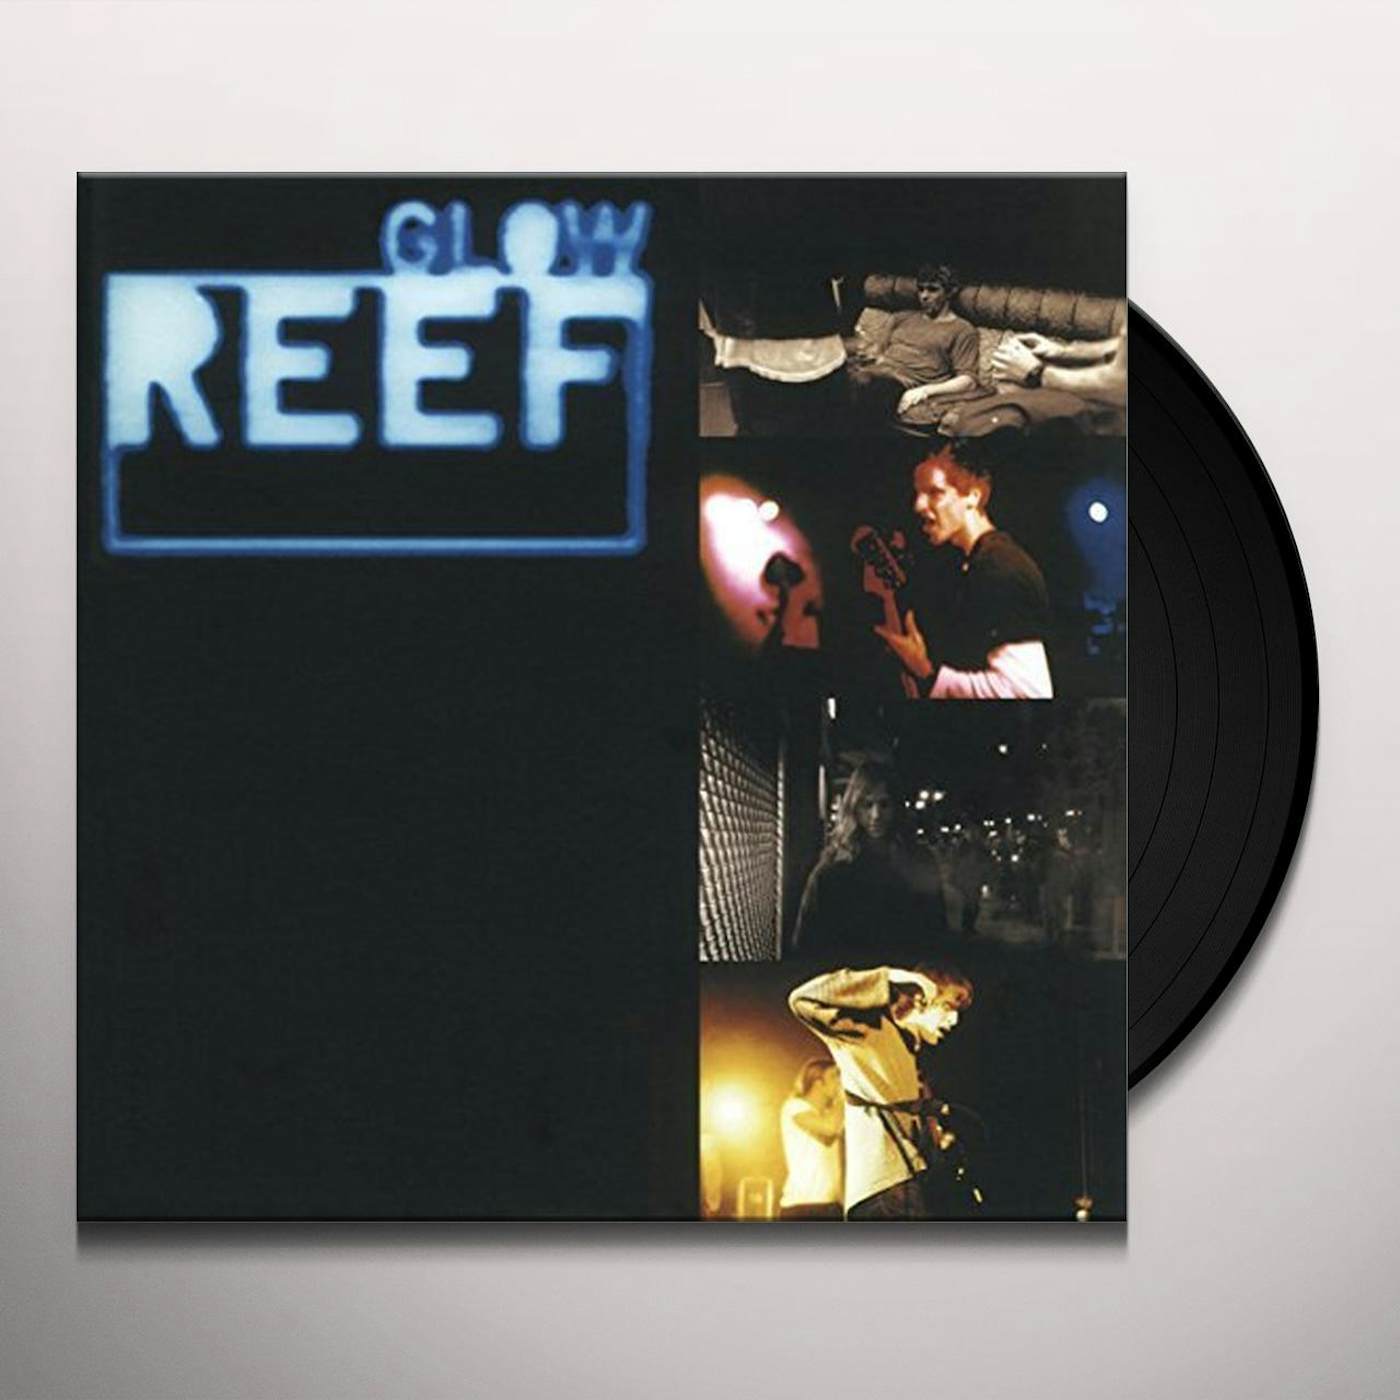 Reef Glow Vinyl Record